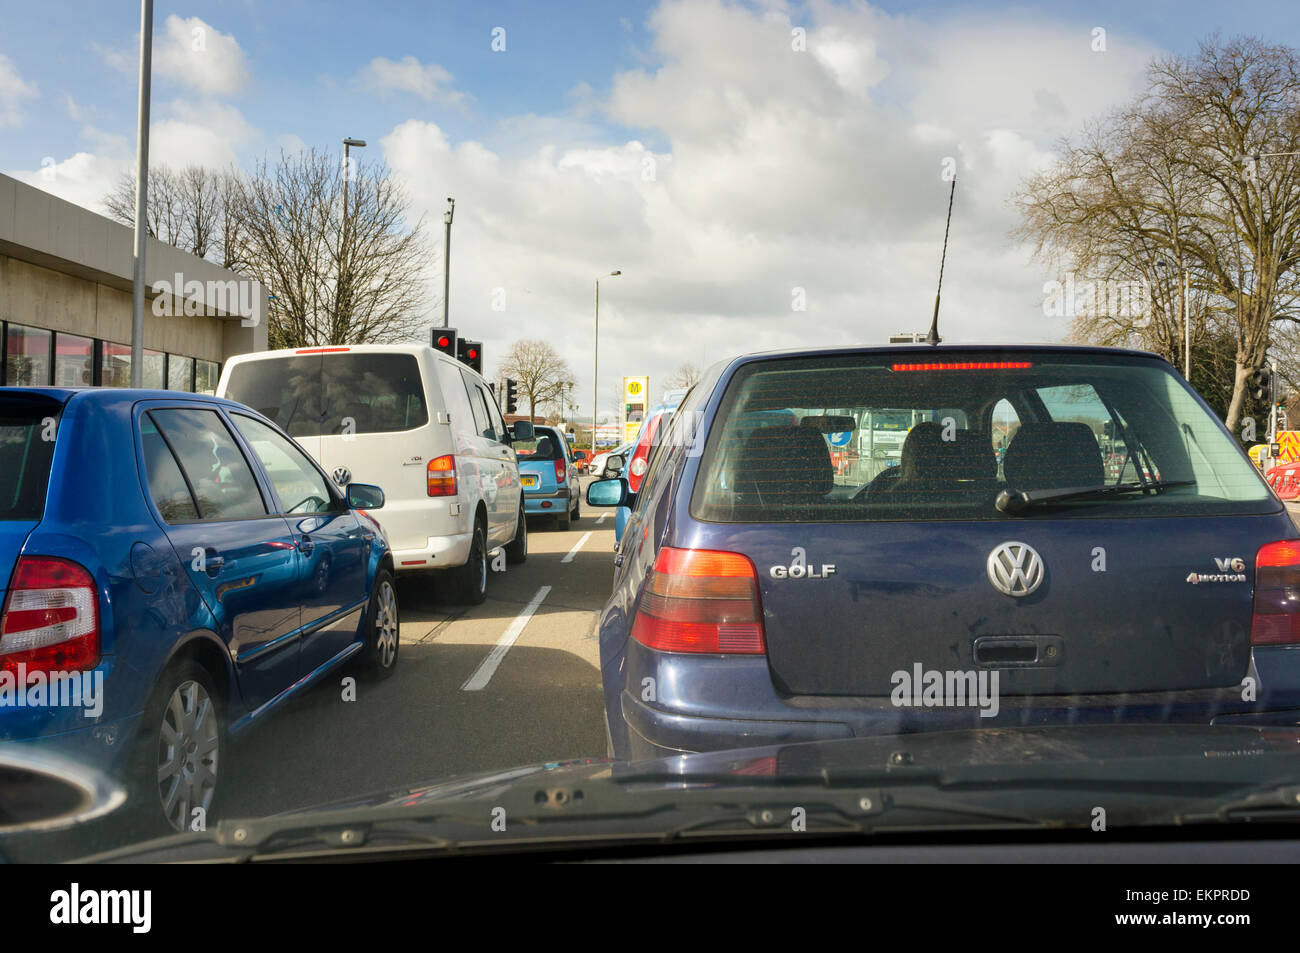 Traffico di automobili in coda al semaforo con lavori in corso sulle strade di una città, England, Regno Unito Foto Stock